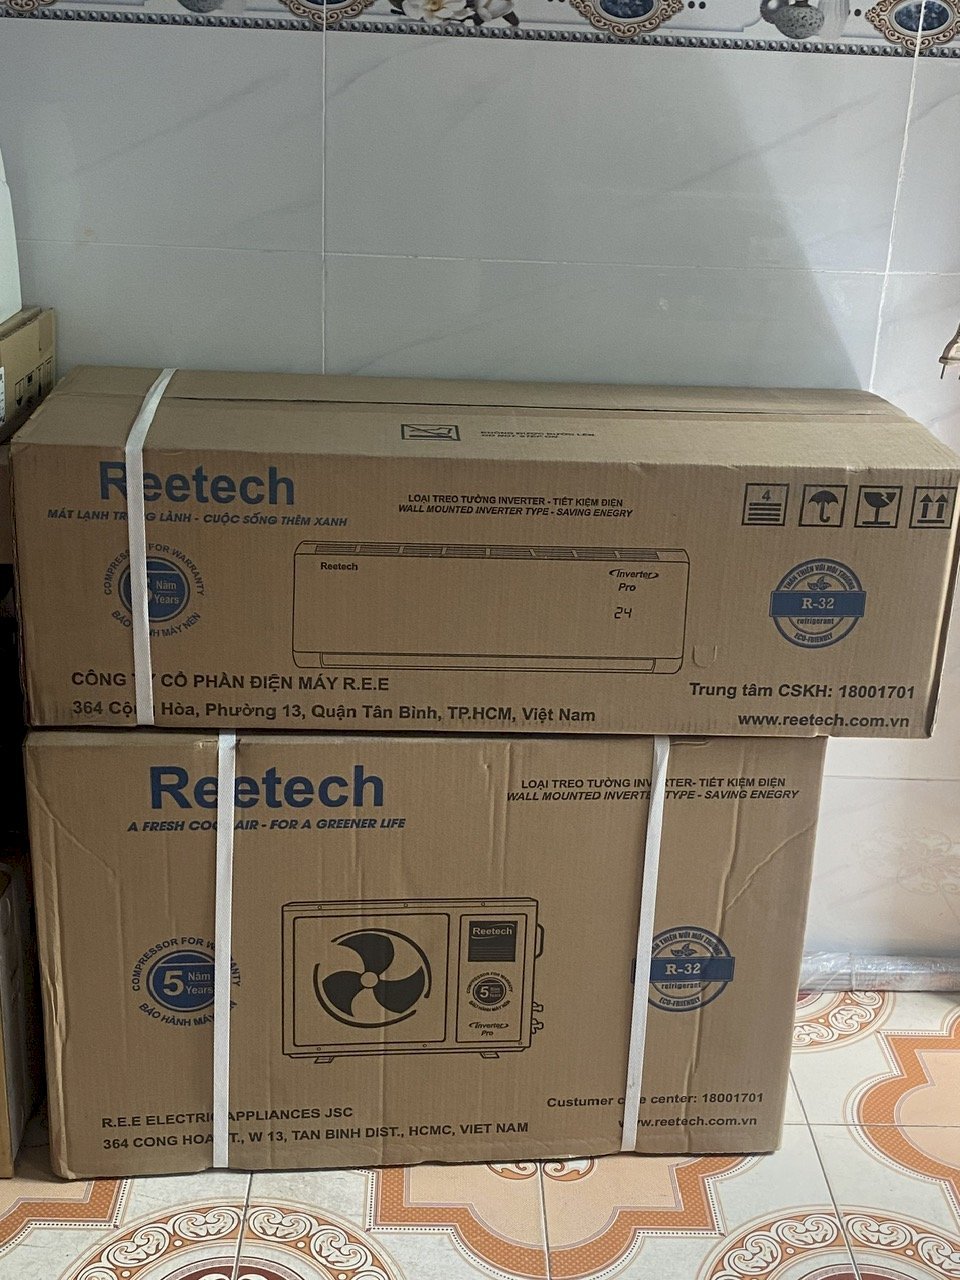 Chọn máy lạnh Reetech - Giá rẻ bất ngời